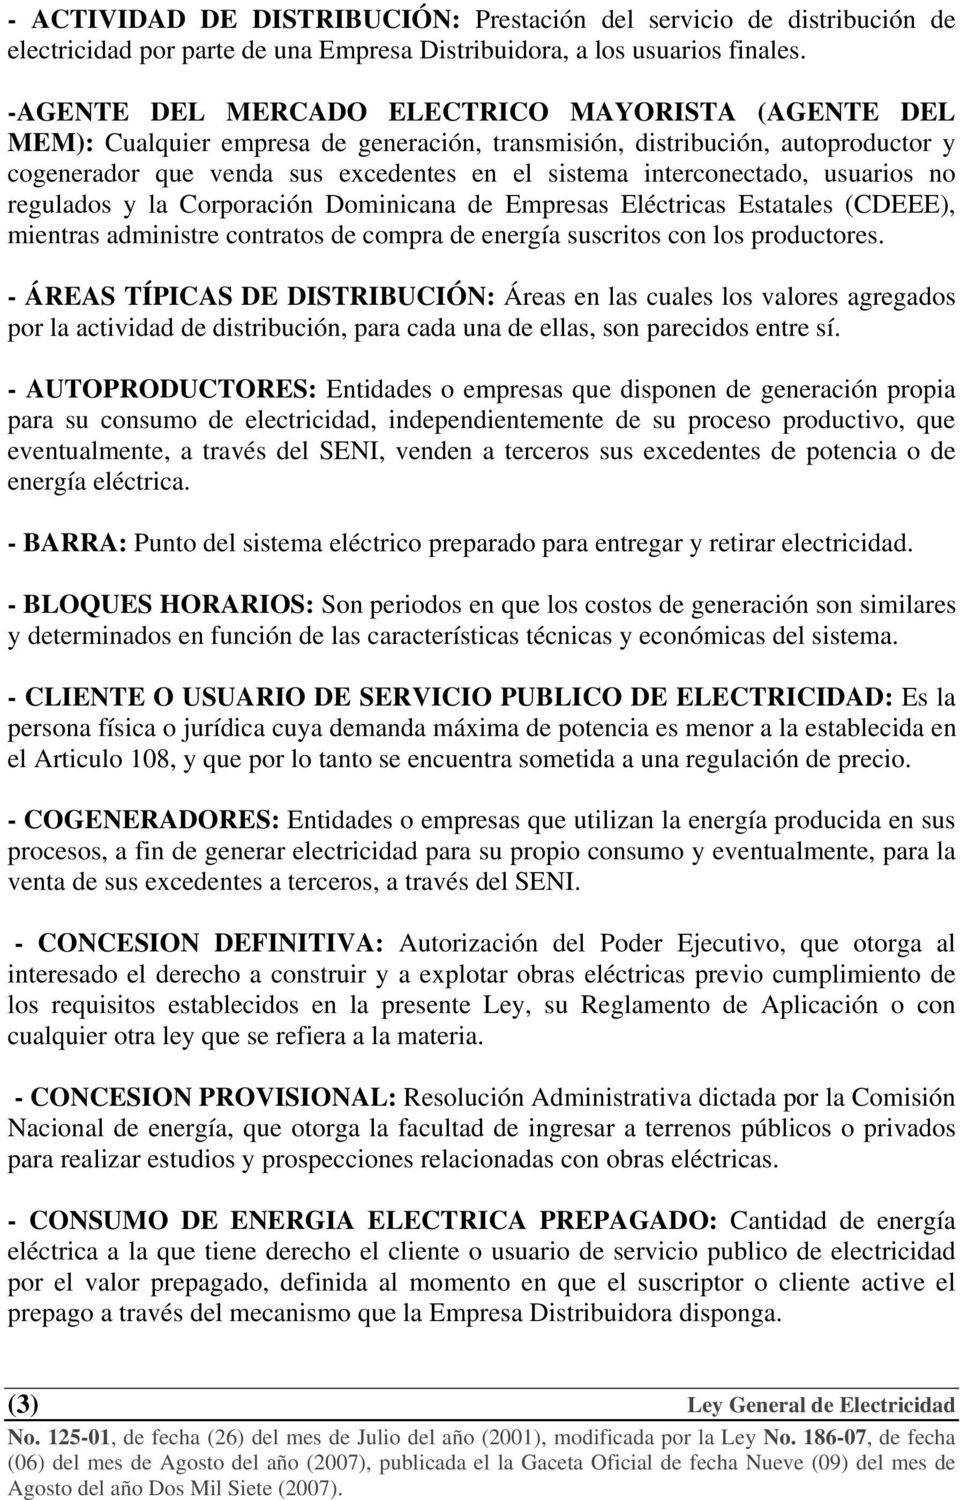 interconectado, usuarios no regulados y la Corporación Dominicana de Empresas Eléctricas Estatales (CDEEE), mientras administre contratos de compra de energía suscritos con los productores.